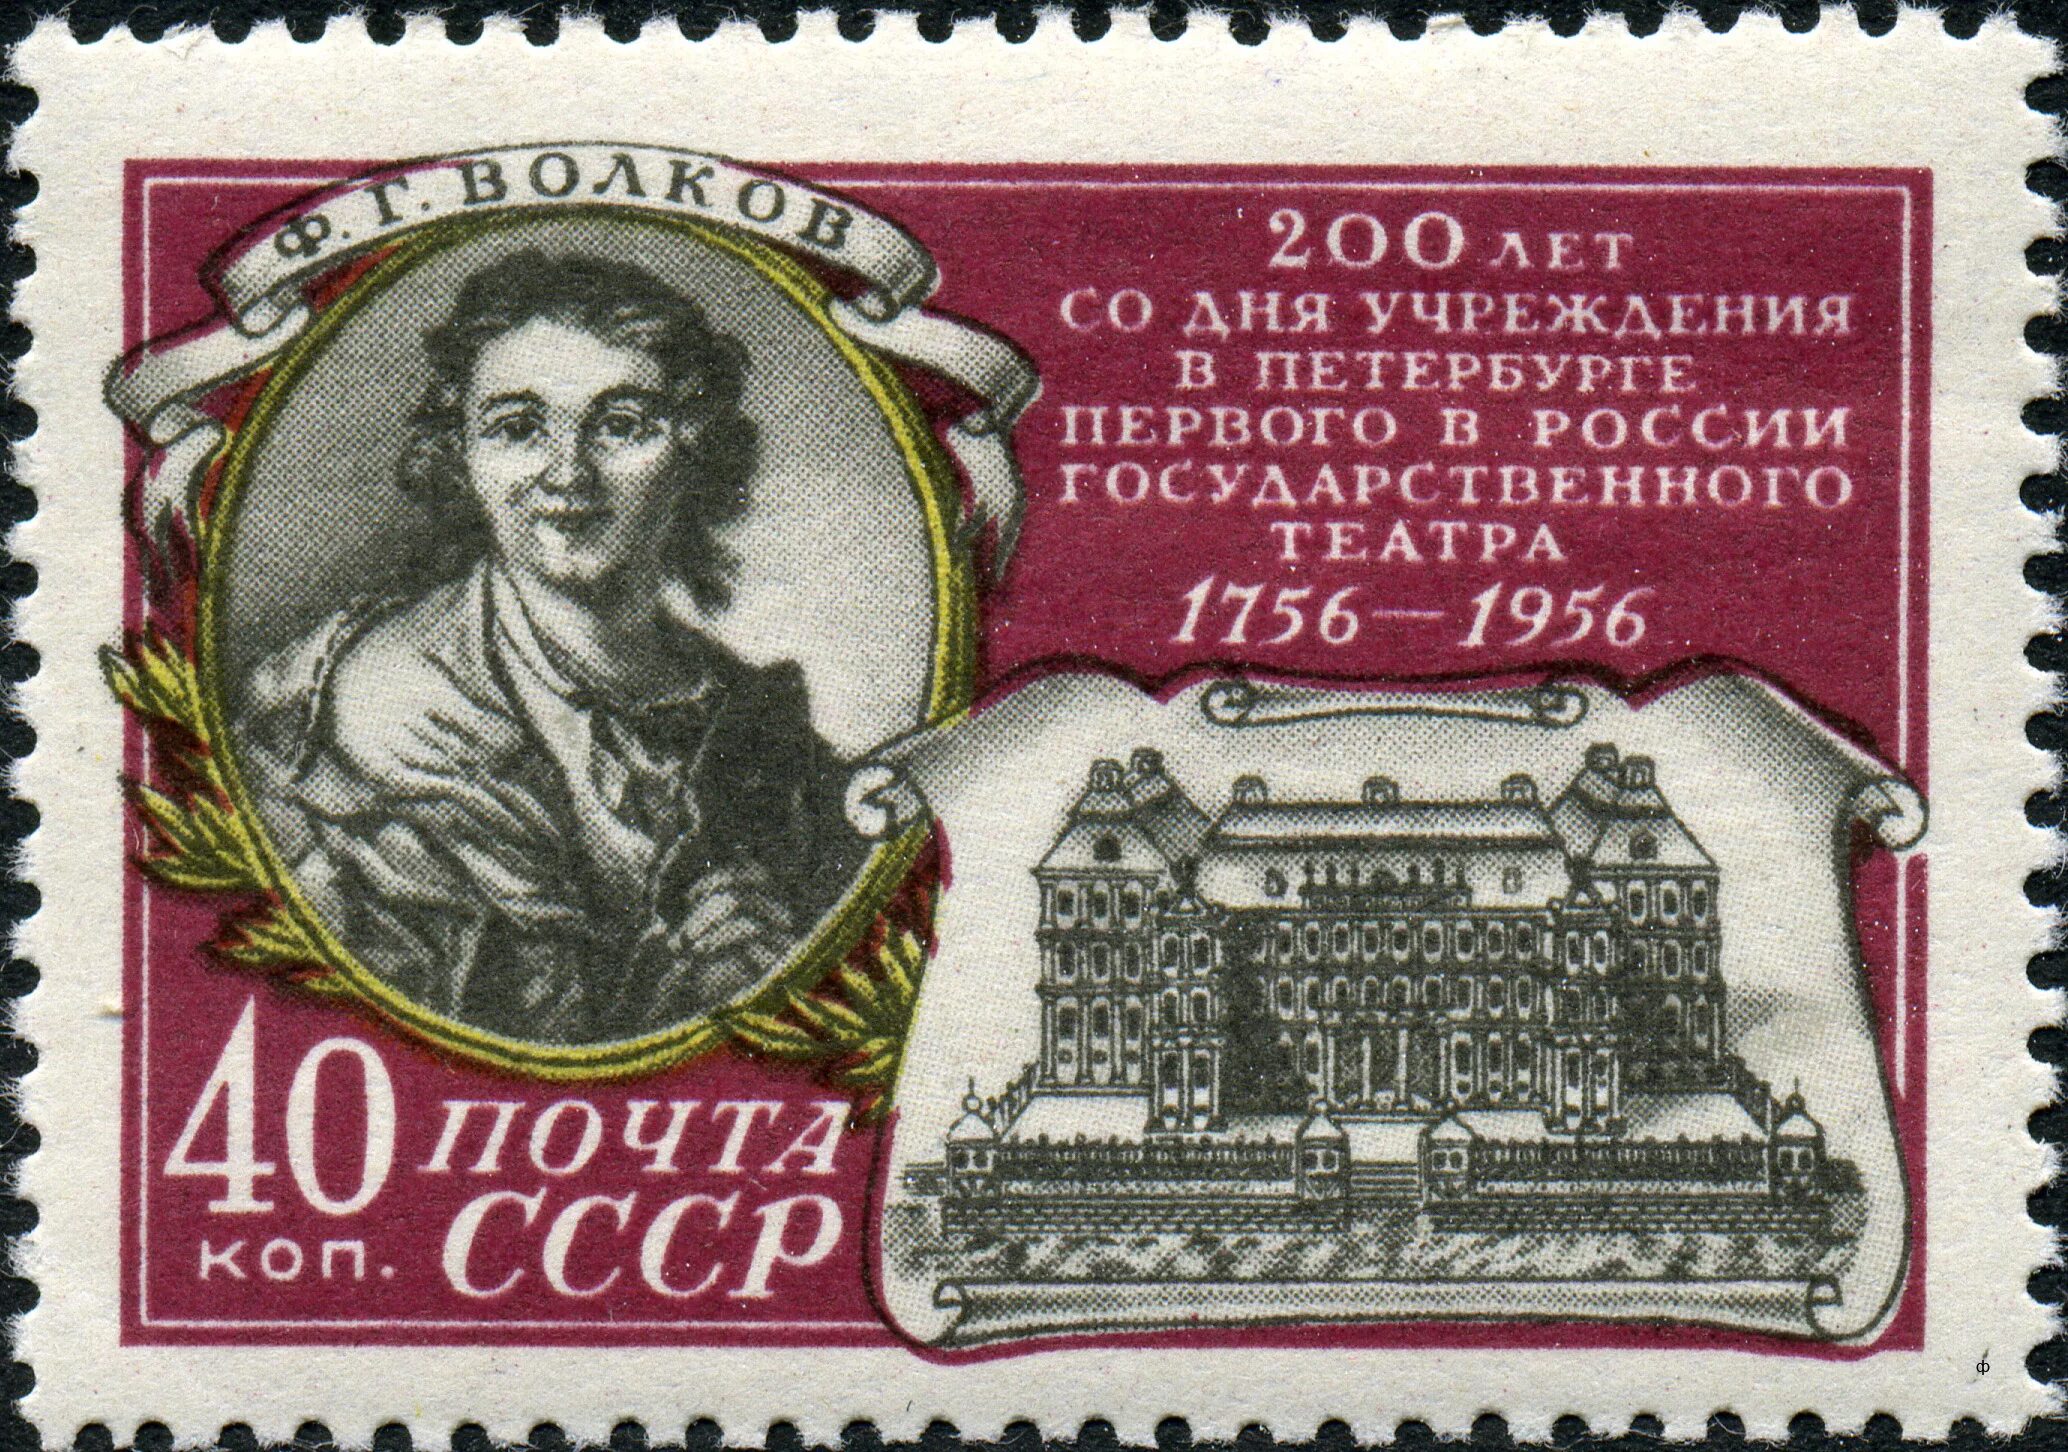 Каким событиям посвящены данные почтовые марки. Марка Волков 200 лет. Марка с большим театром. Почтовые марки посвященные Волкову.